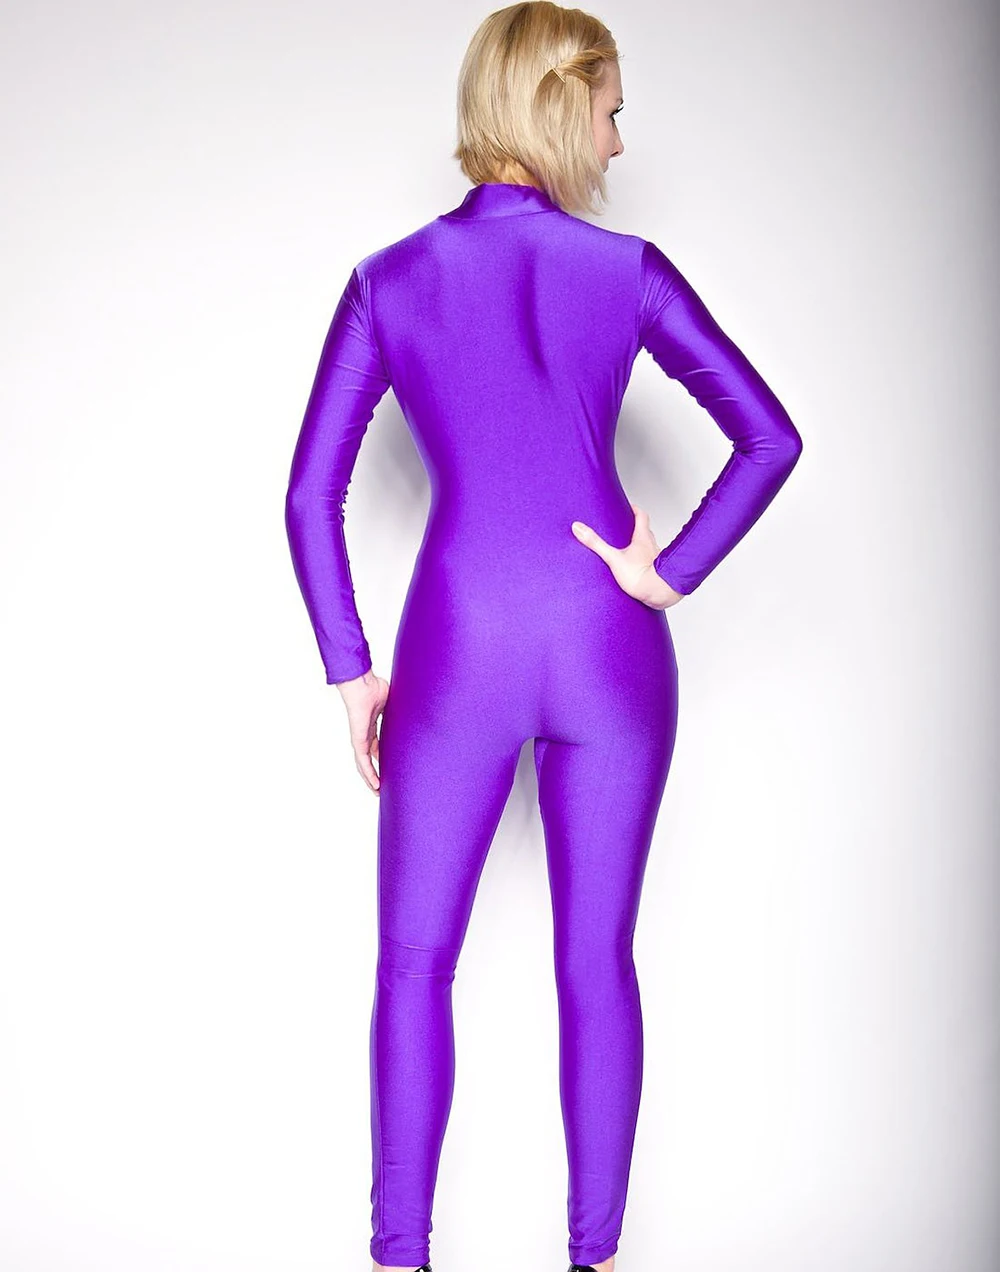 SPEERISE Взрослый Темно-Синий лайкра спандекс облегающий гимнастический костюм полный тело с длинным рукавом для женщин водолазка Zentai балет латинский танец одежда